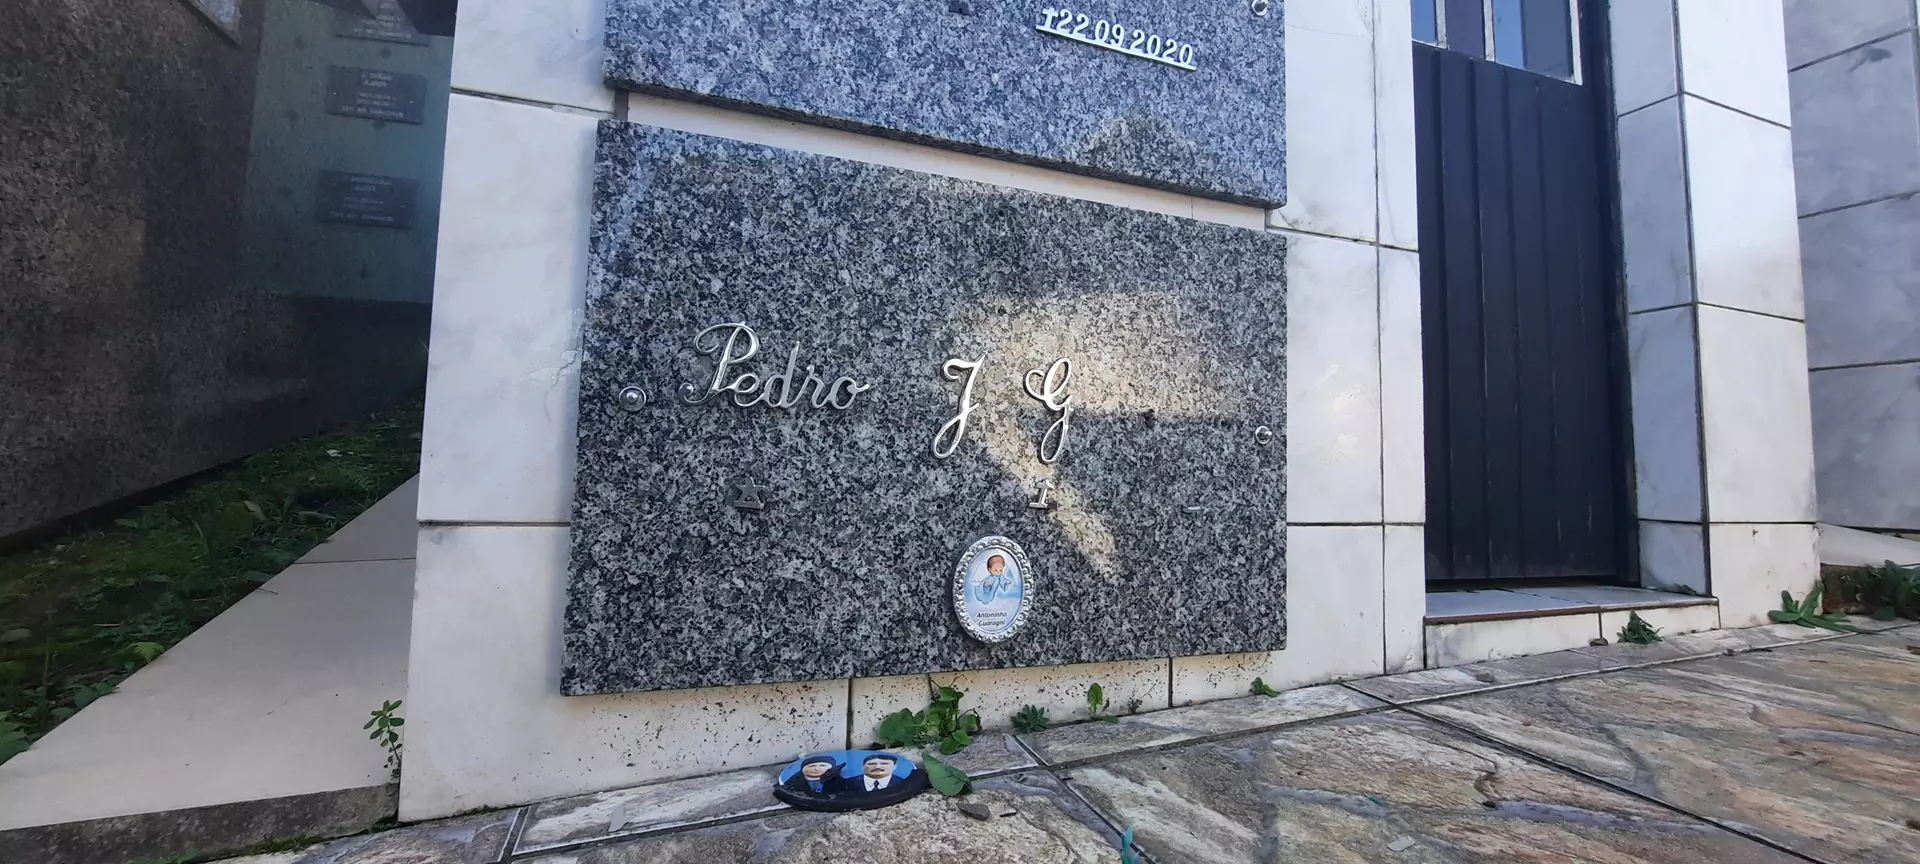 Cemitério do Cinco Alto também é alvo de vandalismo em Barbosa